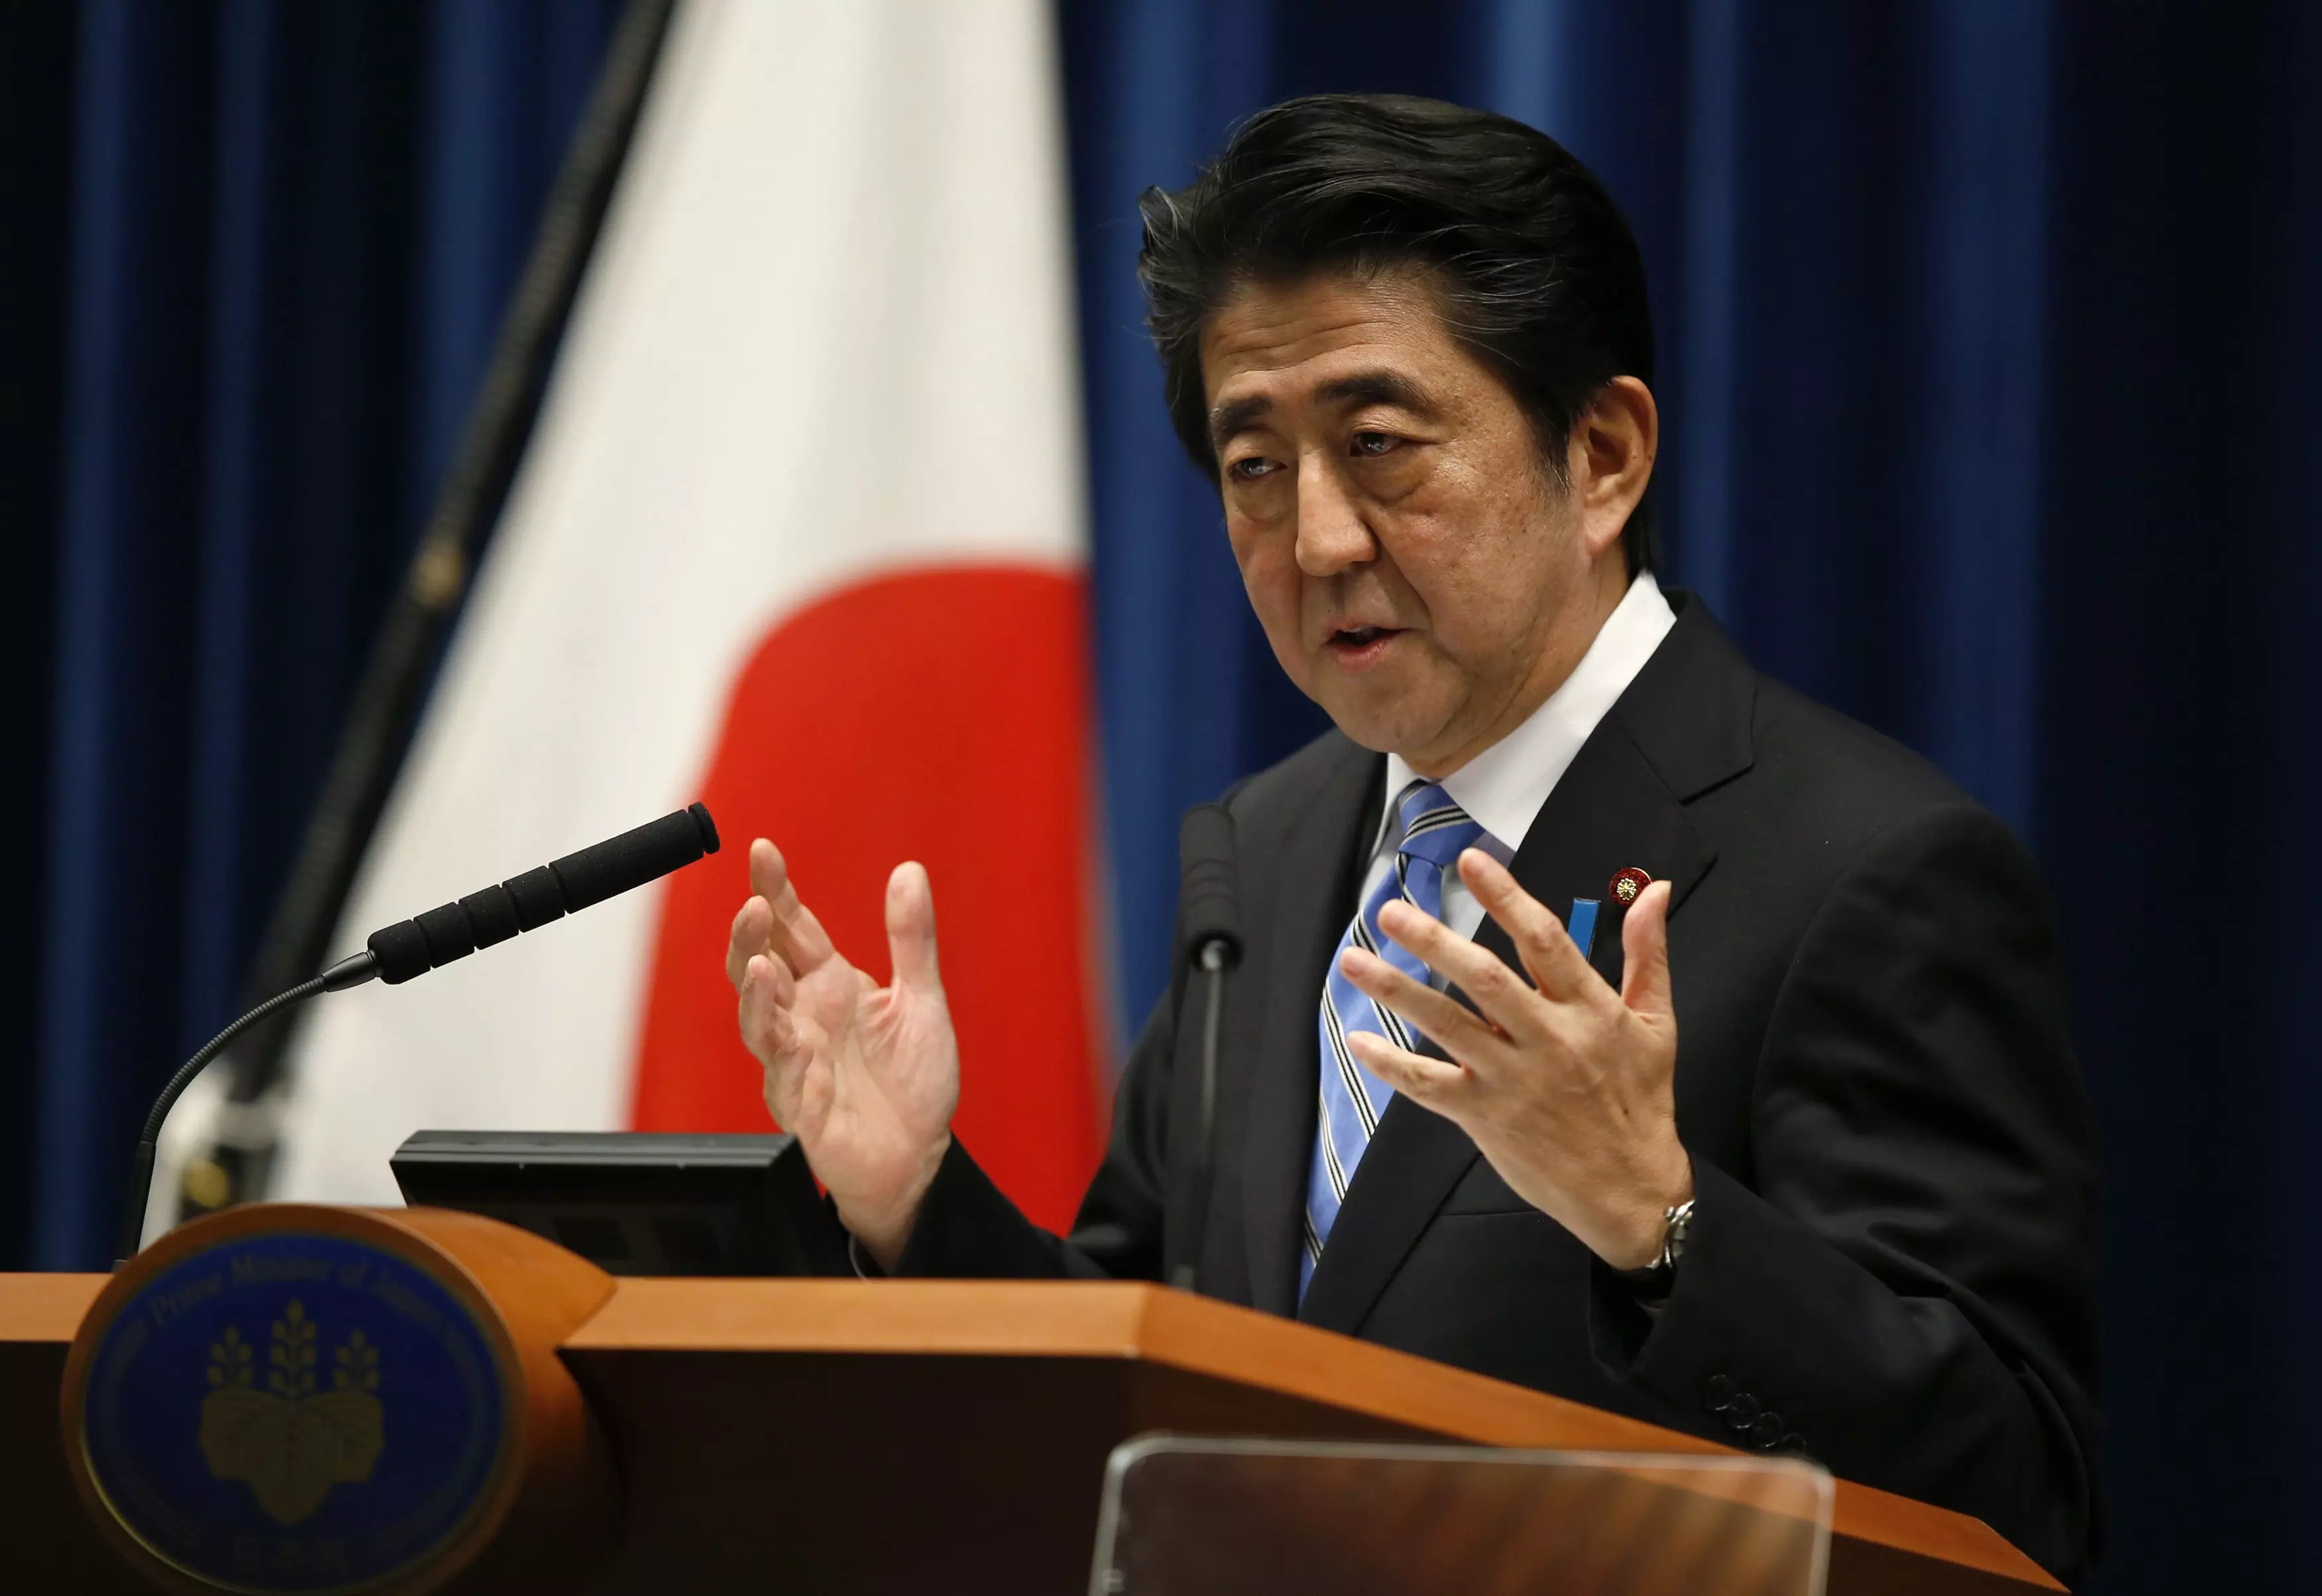 ראש ממשלת יפן, שינזו אבה